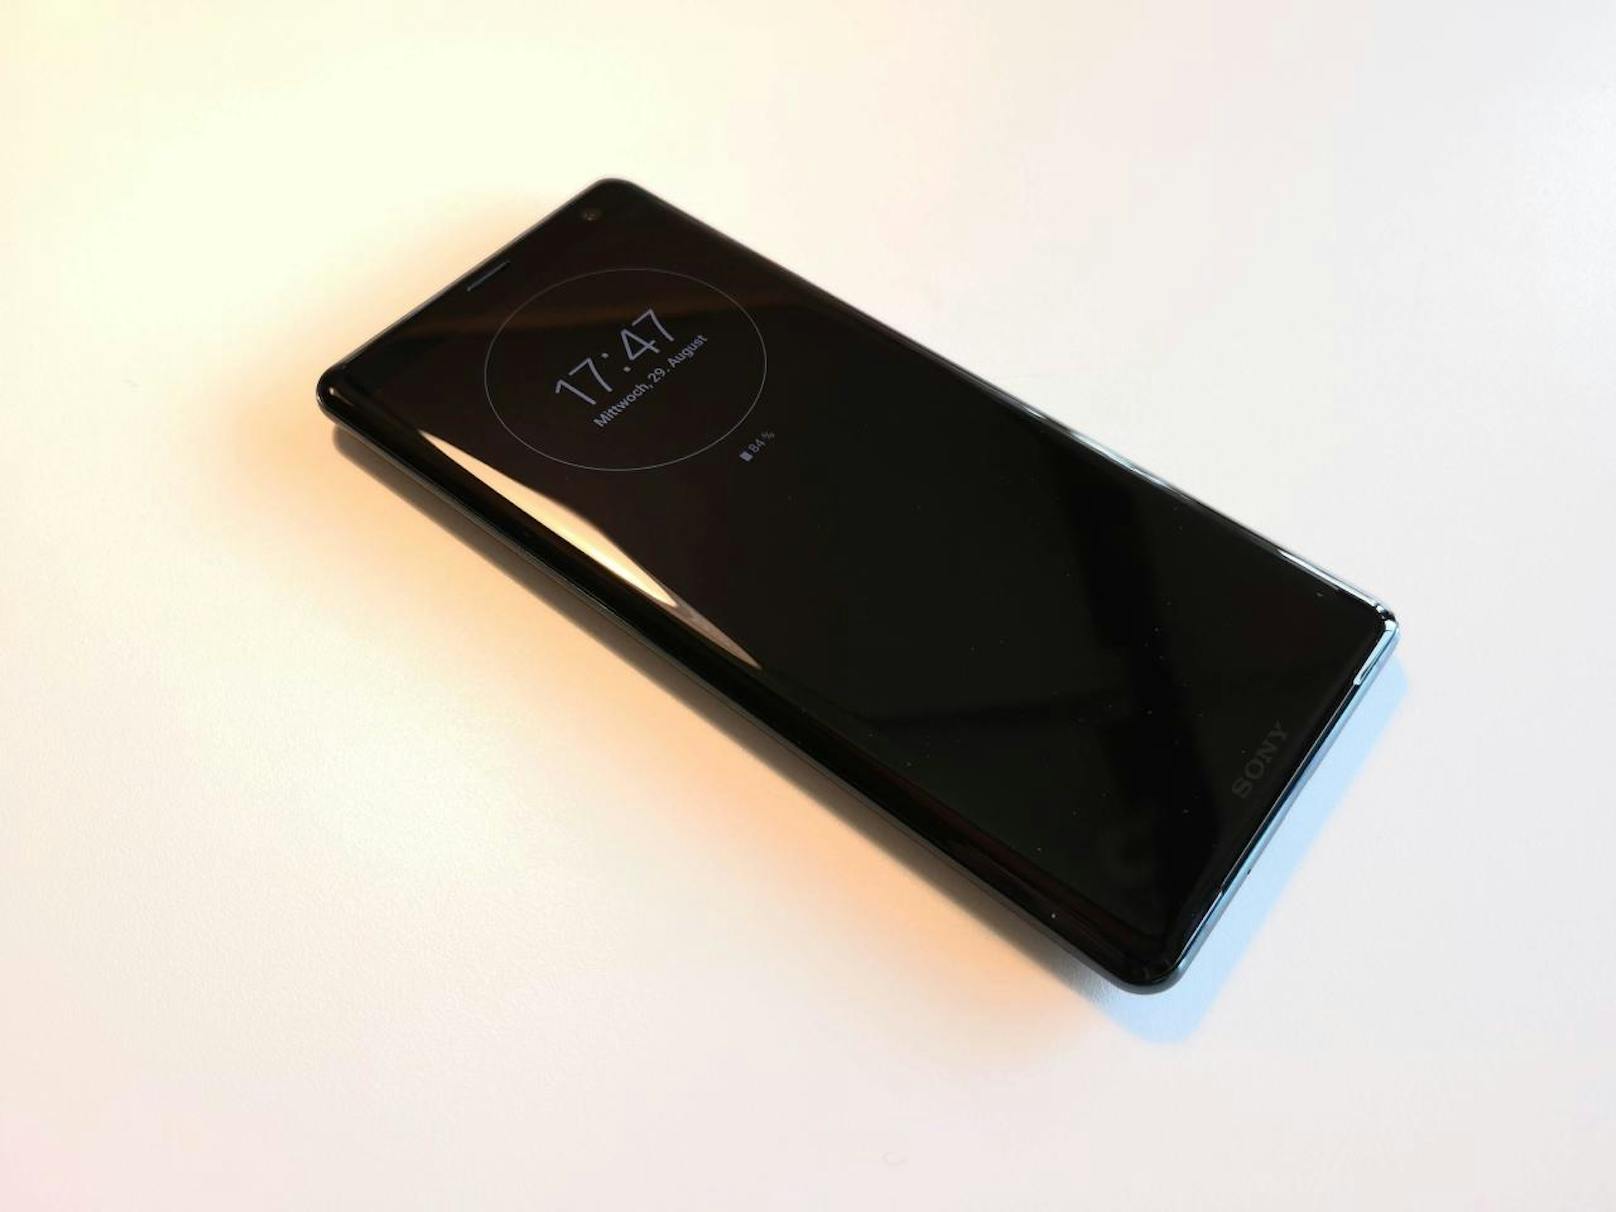 Bei Sonys neuem Smartphone sticht zuerst das Display ins Auge. Denn das Xperia XZ3 bietet nicht nur einen OLED-Bildschirm, sondern auch erstmals Sonys Bravia TV-Technologie.